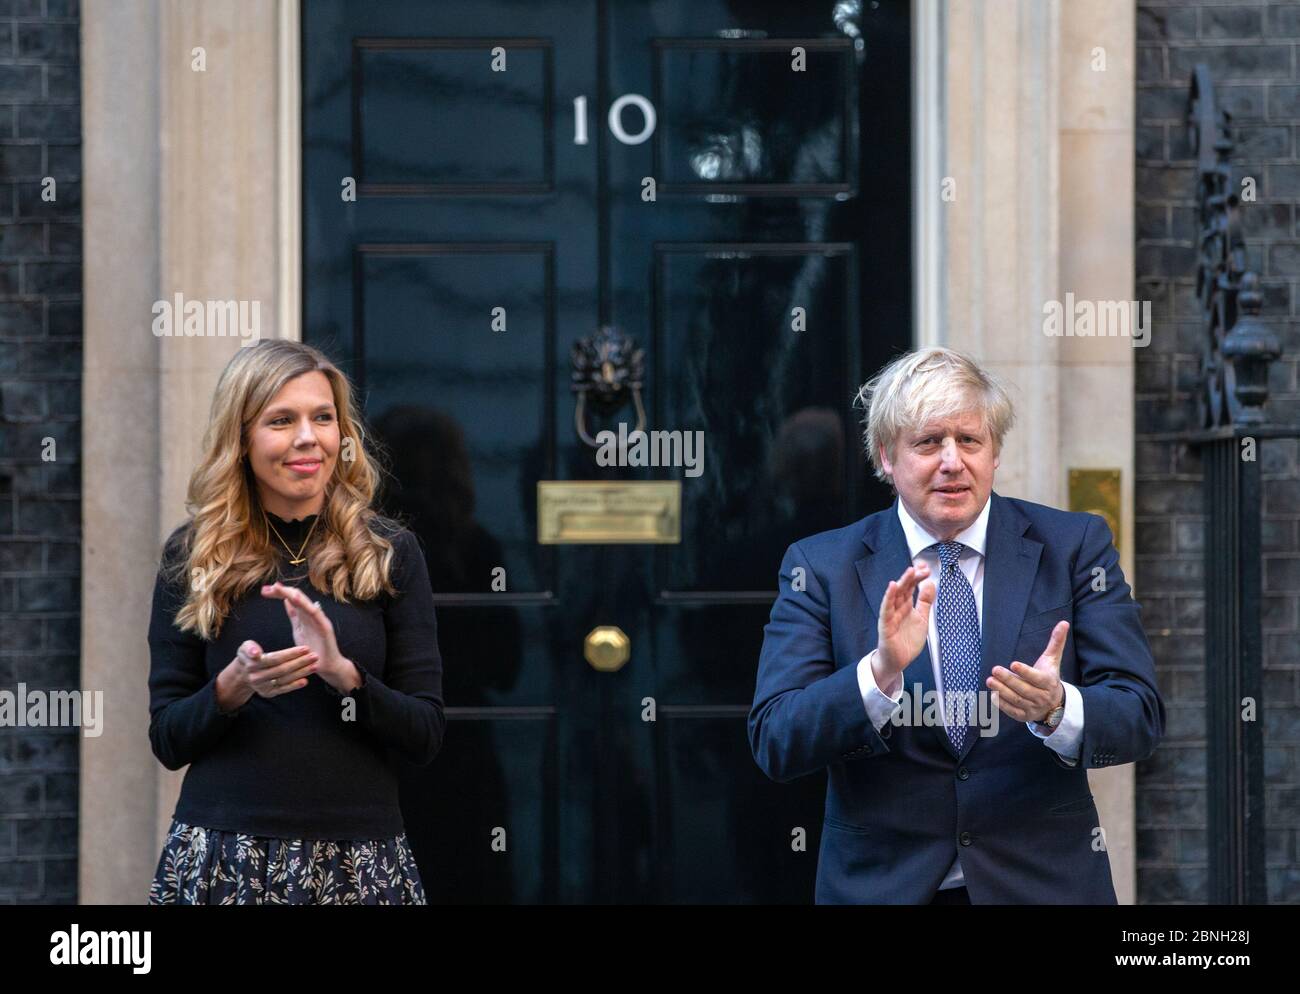 Premierminister Boris Johnson wird auf den Stufen der Downing Street 10 von Verlobter Carrie Symonds begleitet, um "Clap for Carers" zur Unterstützung des NHS zu unterstützen. Stockfoto